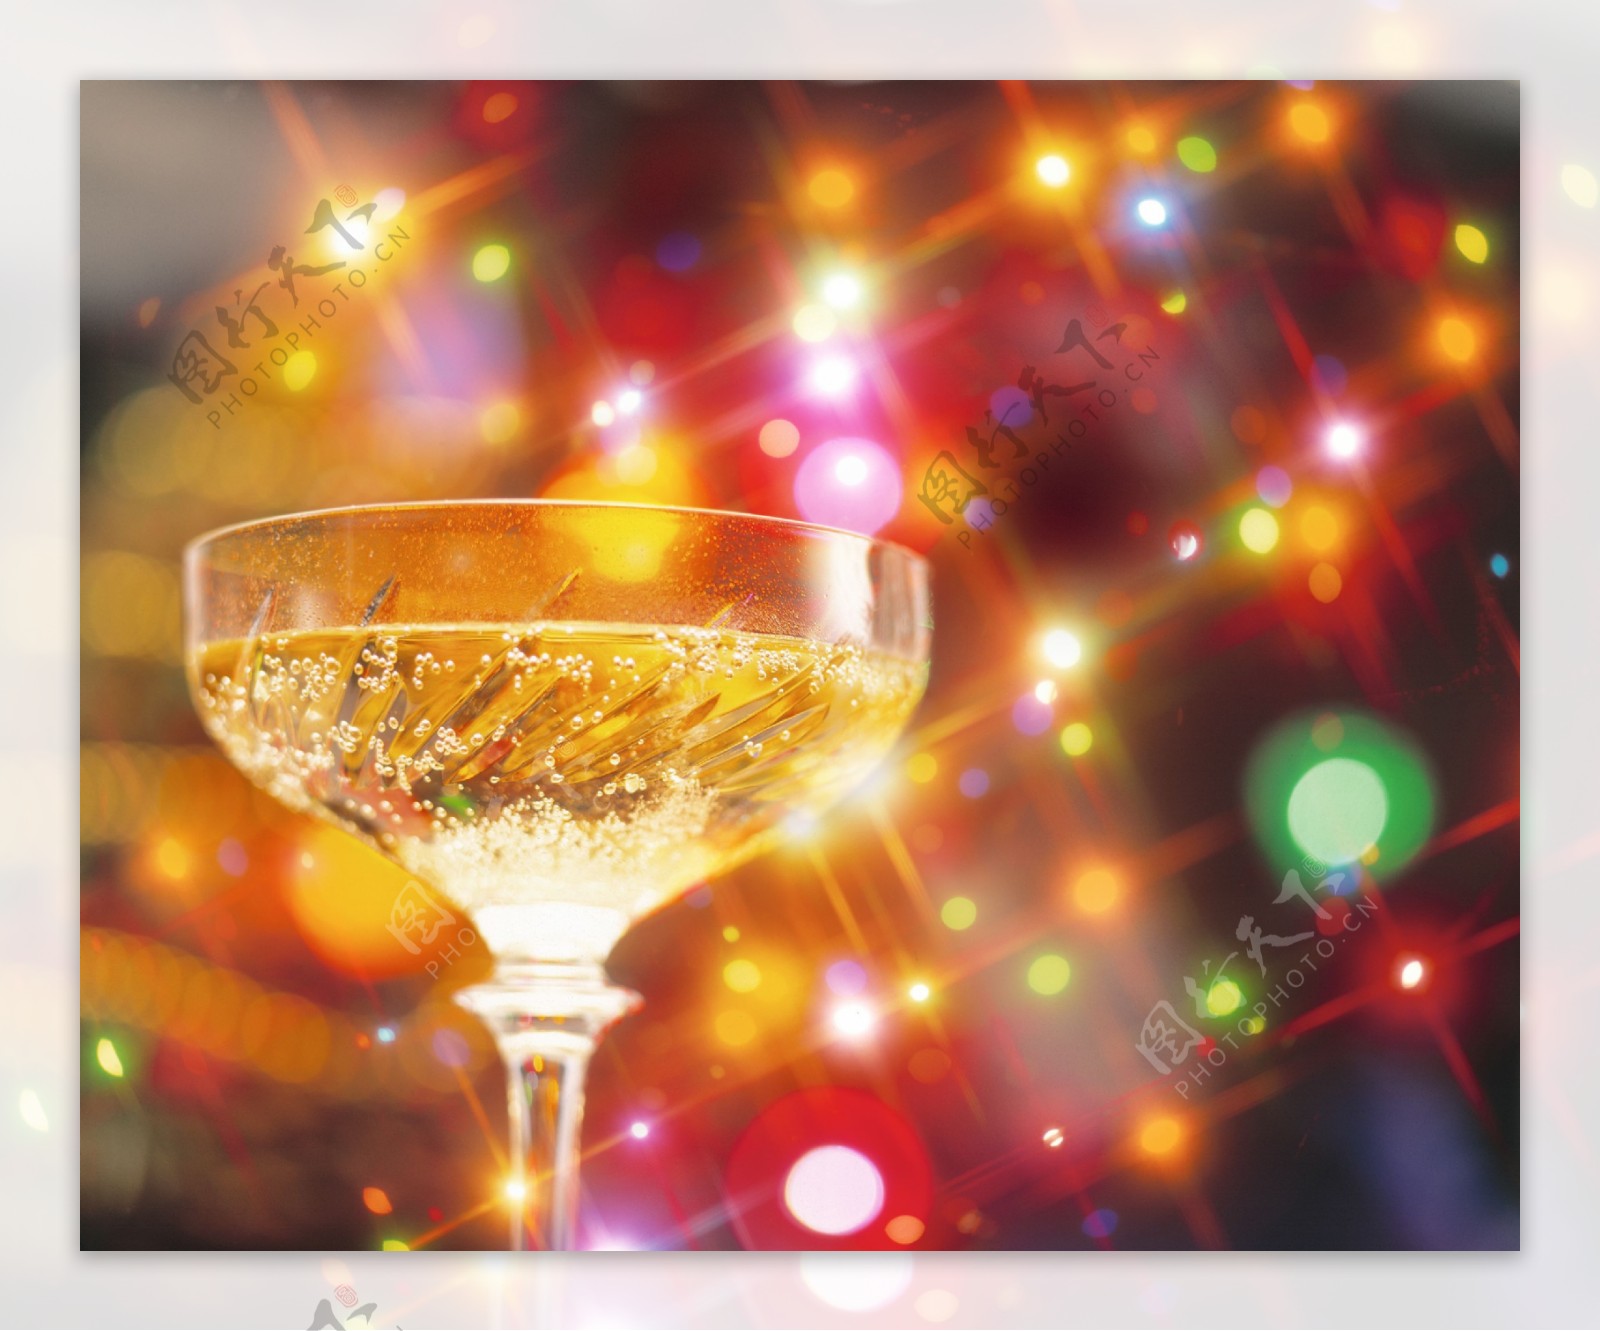 圣诞背景高清图片玻璃酒杯